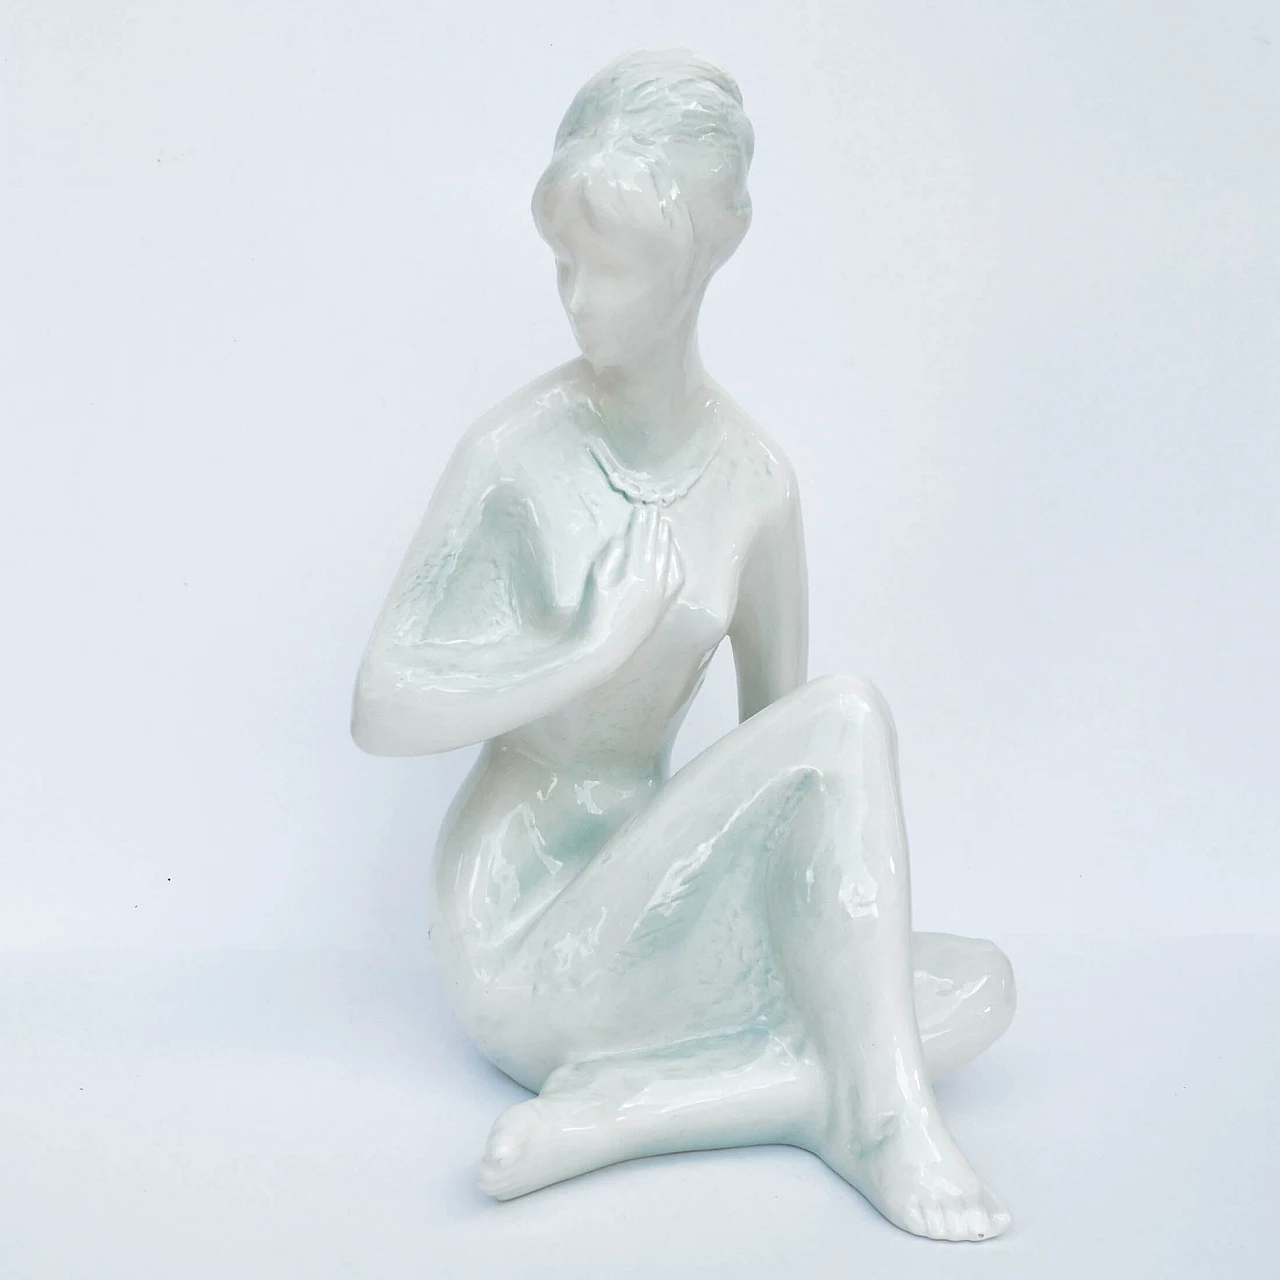 Female nude sculpture by Kokrda Jihokera Bechyně, 1960s 4